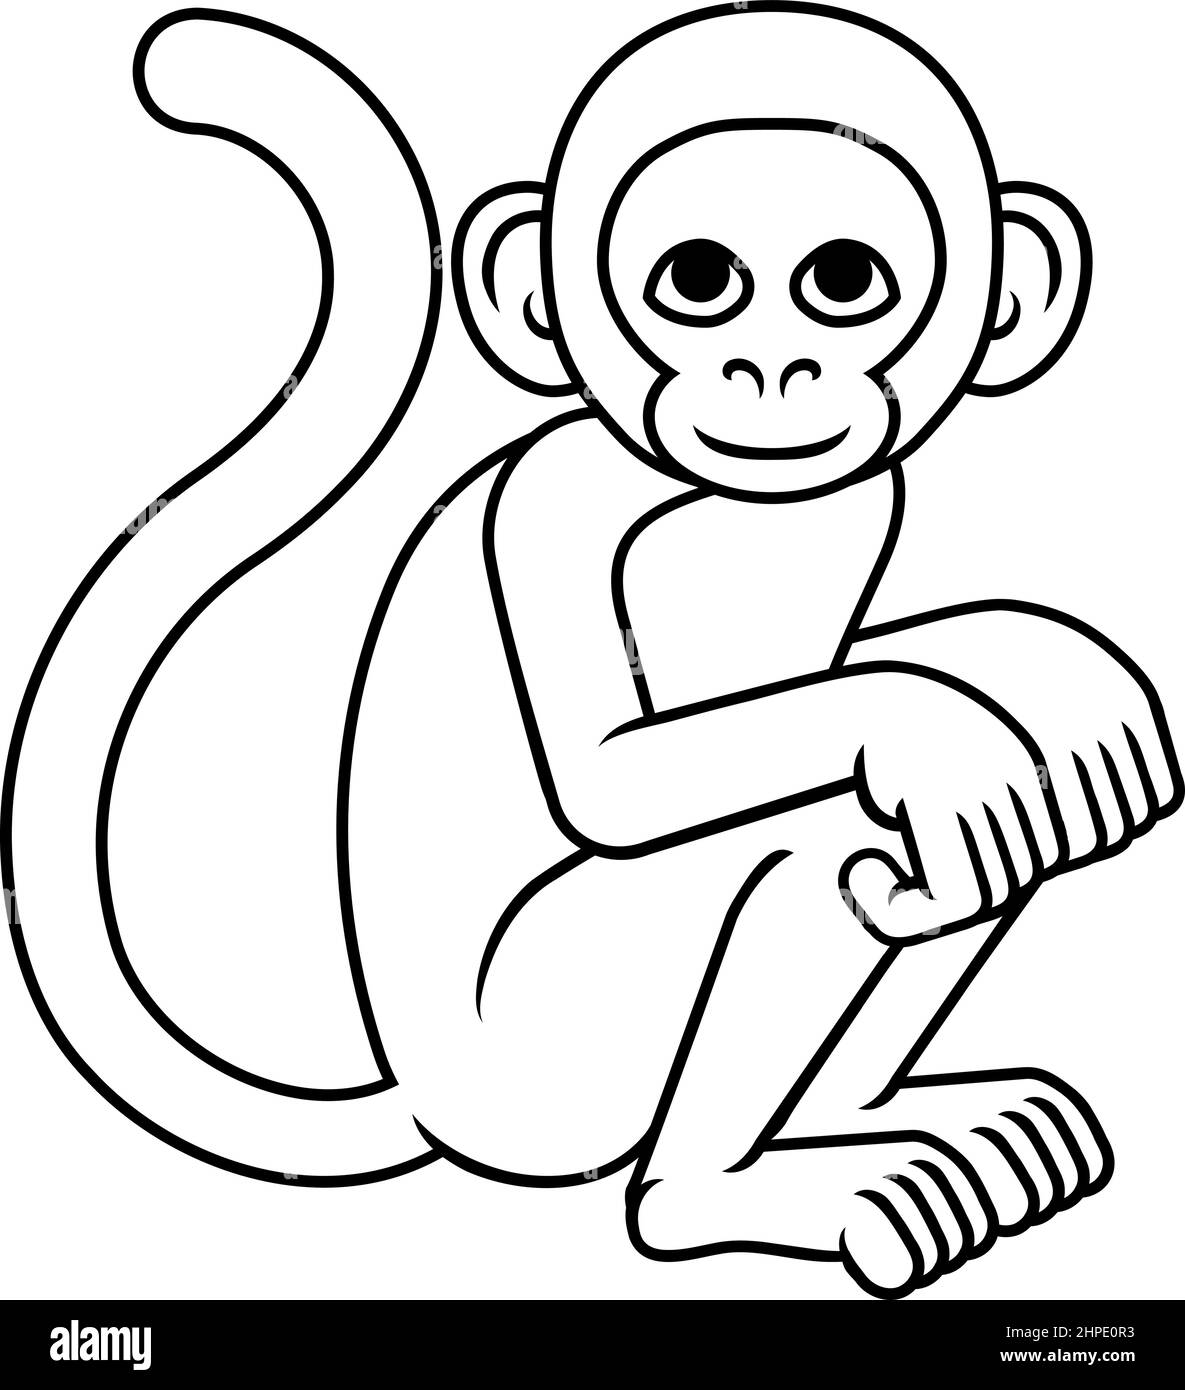 Quieres ser un White Monkey en China? Es fácil